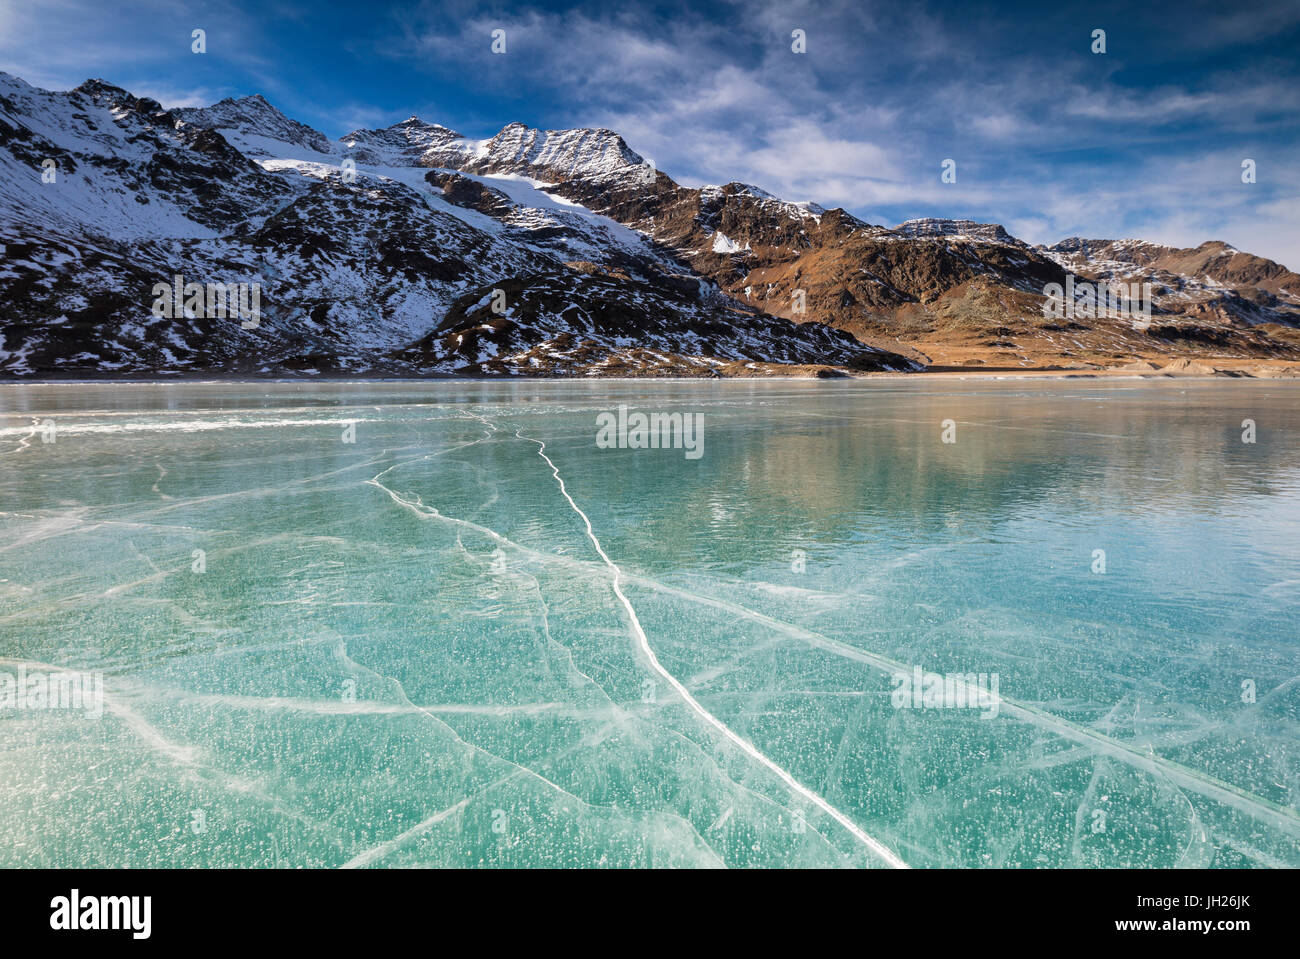 Die schneebedeckten Gipfel umrahmen das gefrorene türkisfarbene Wasser des White Lake, Berninapass, Kanton Graubünden, Engadin, Schweiz Stockfoto